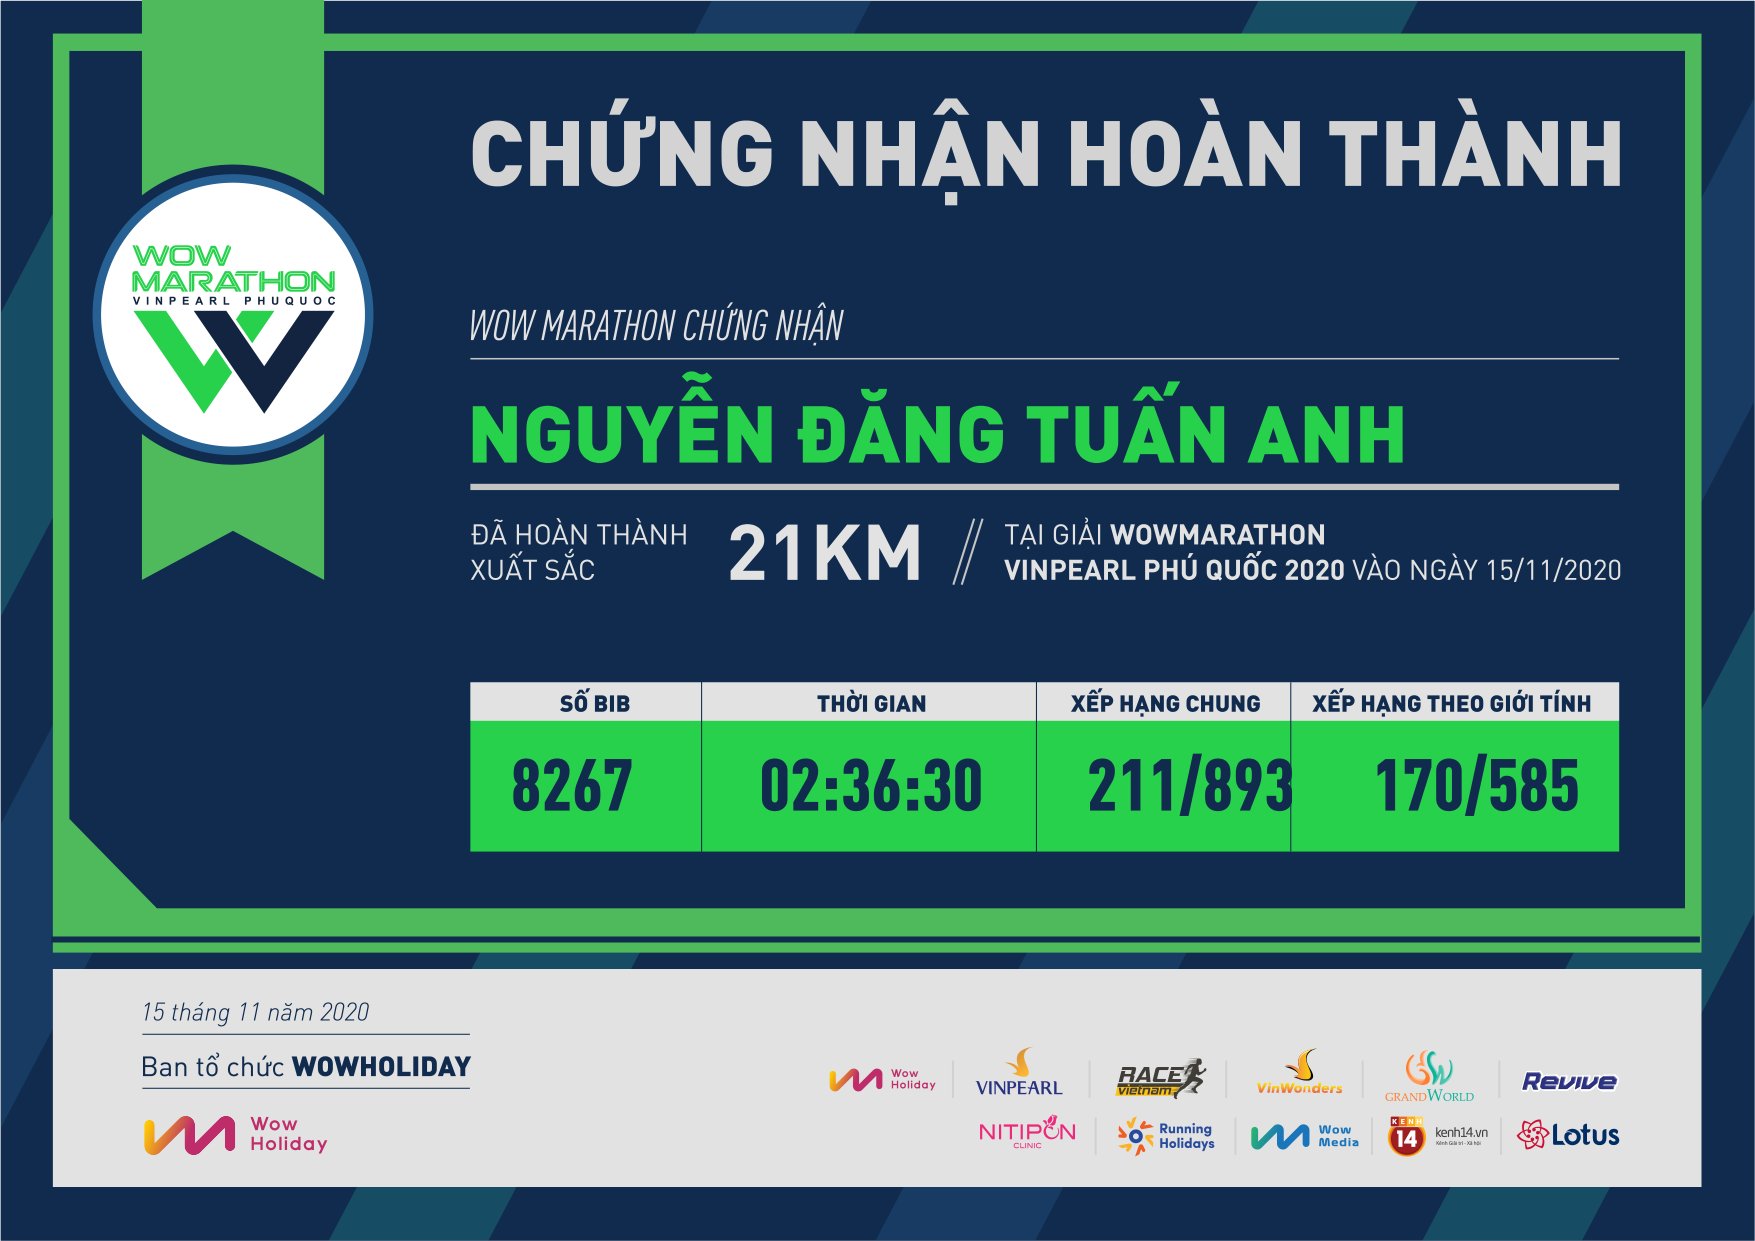 8267 - Nguyễn Đăng Tuấn Anh